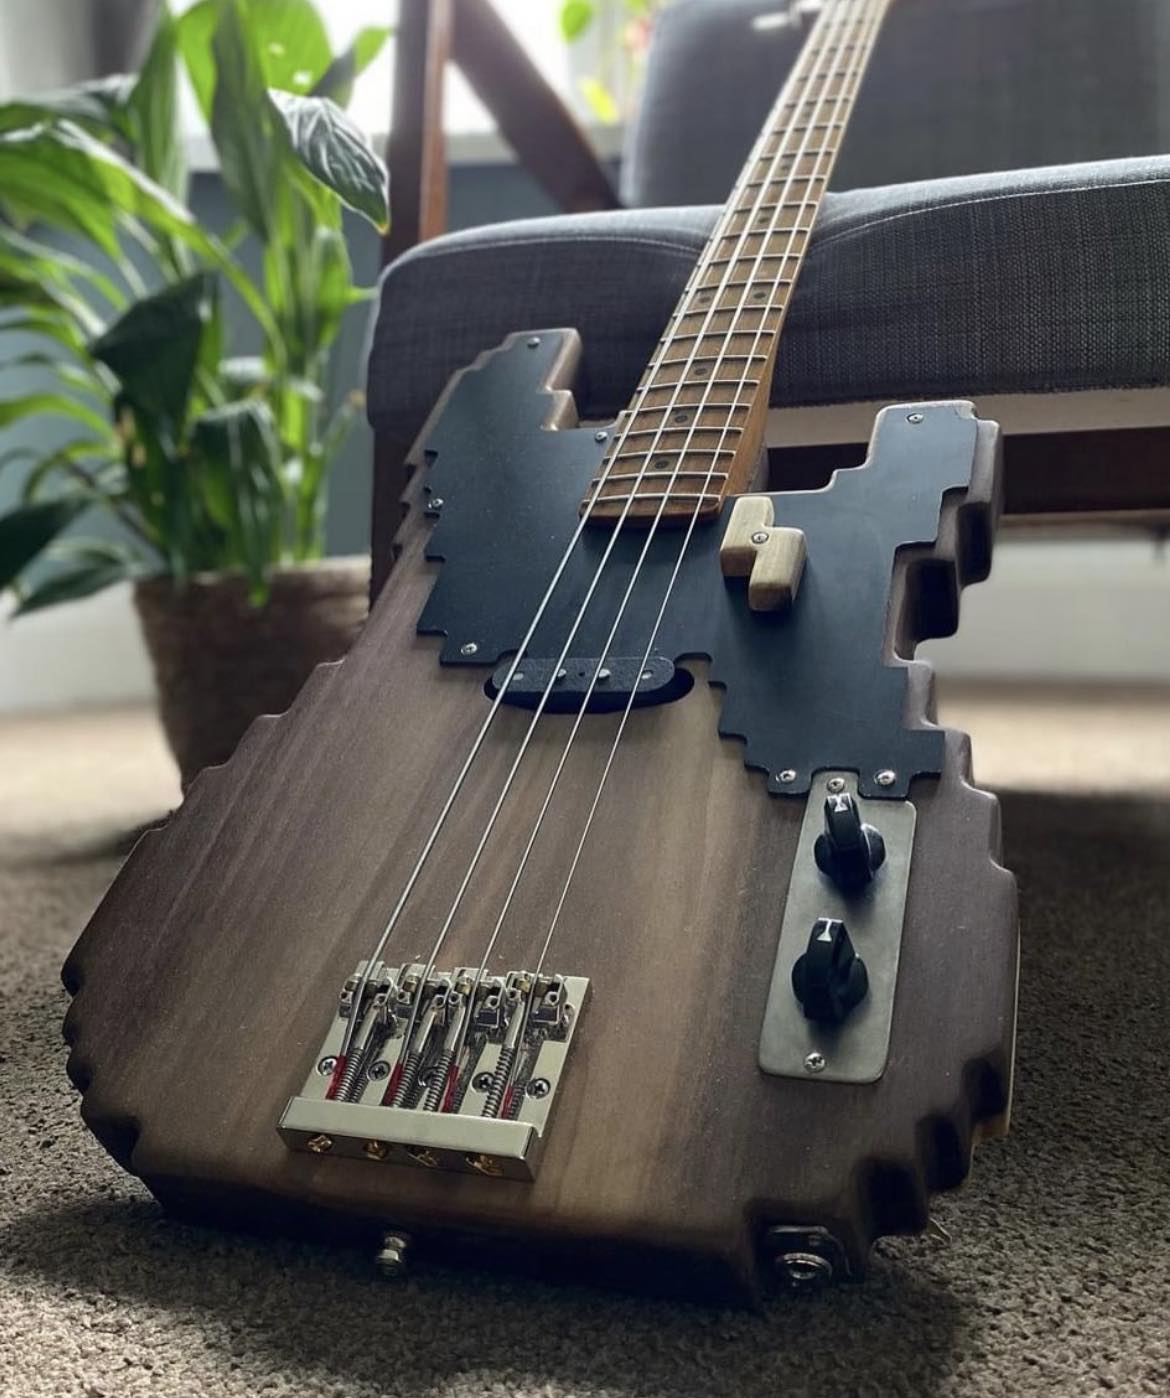 Foto: Instagram Brute Bass guitars